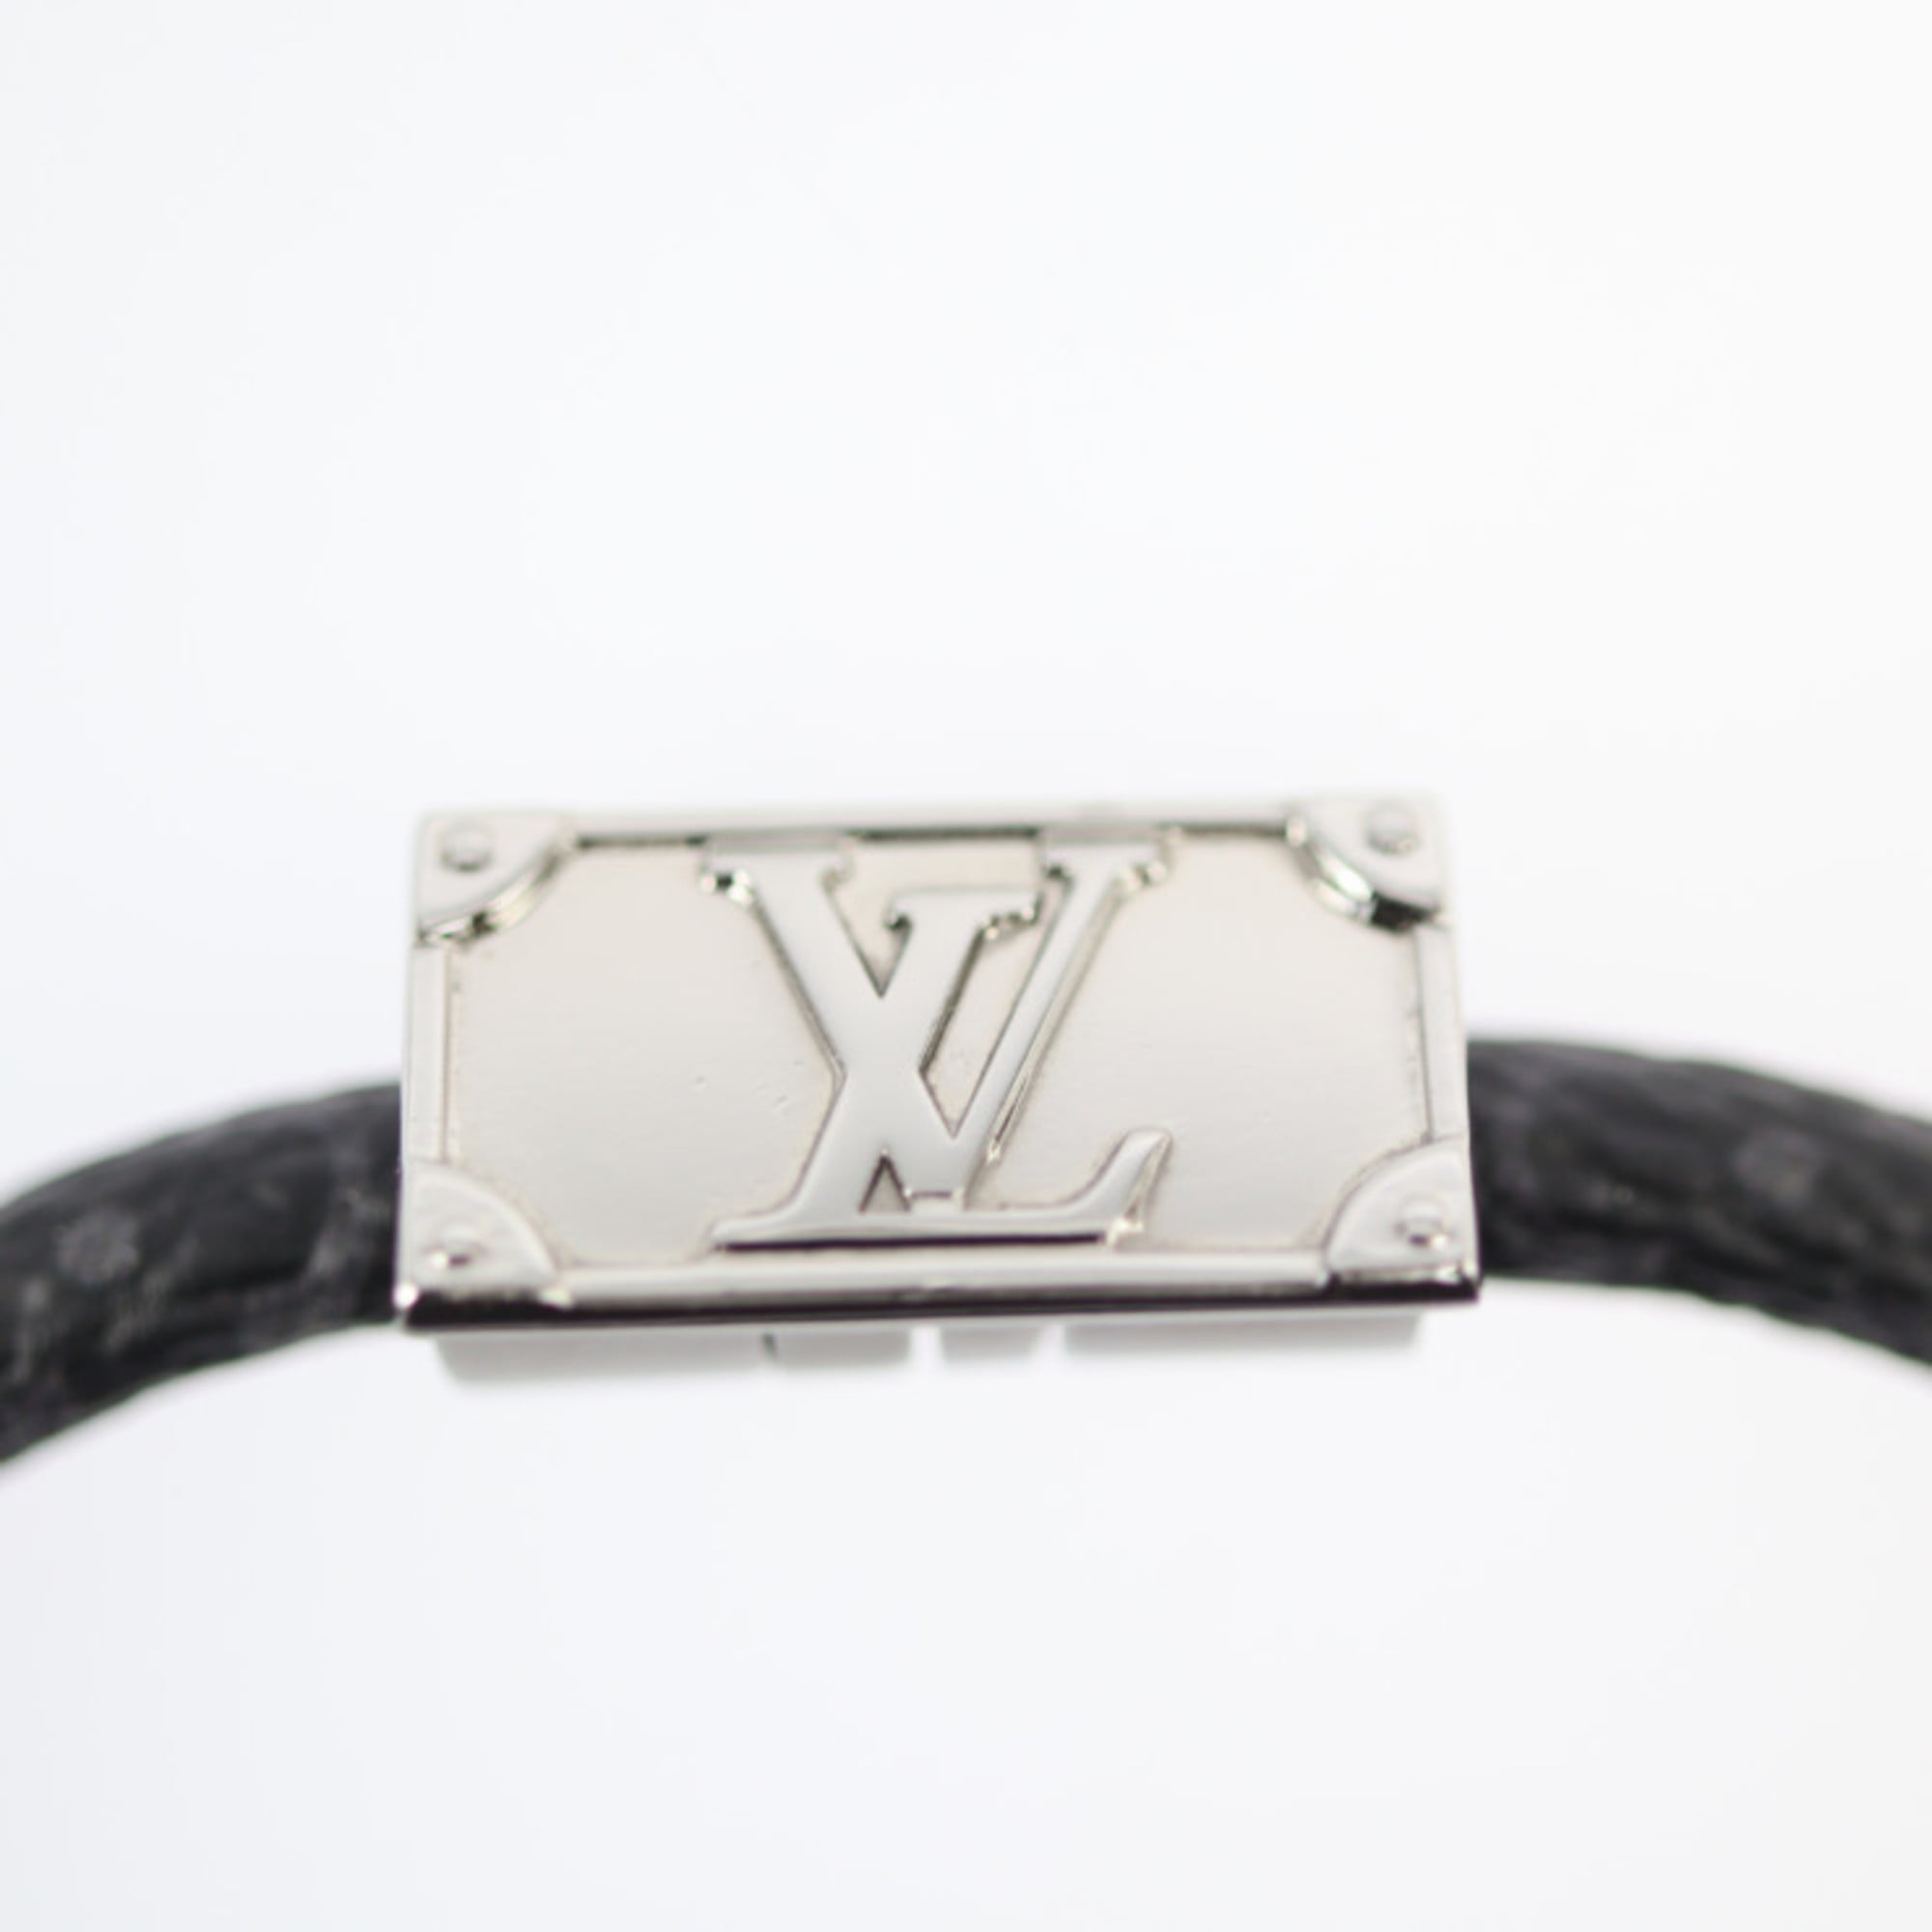 Ceramic bracelet Louis Vuitton Green in Ceramic - 22867133